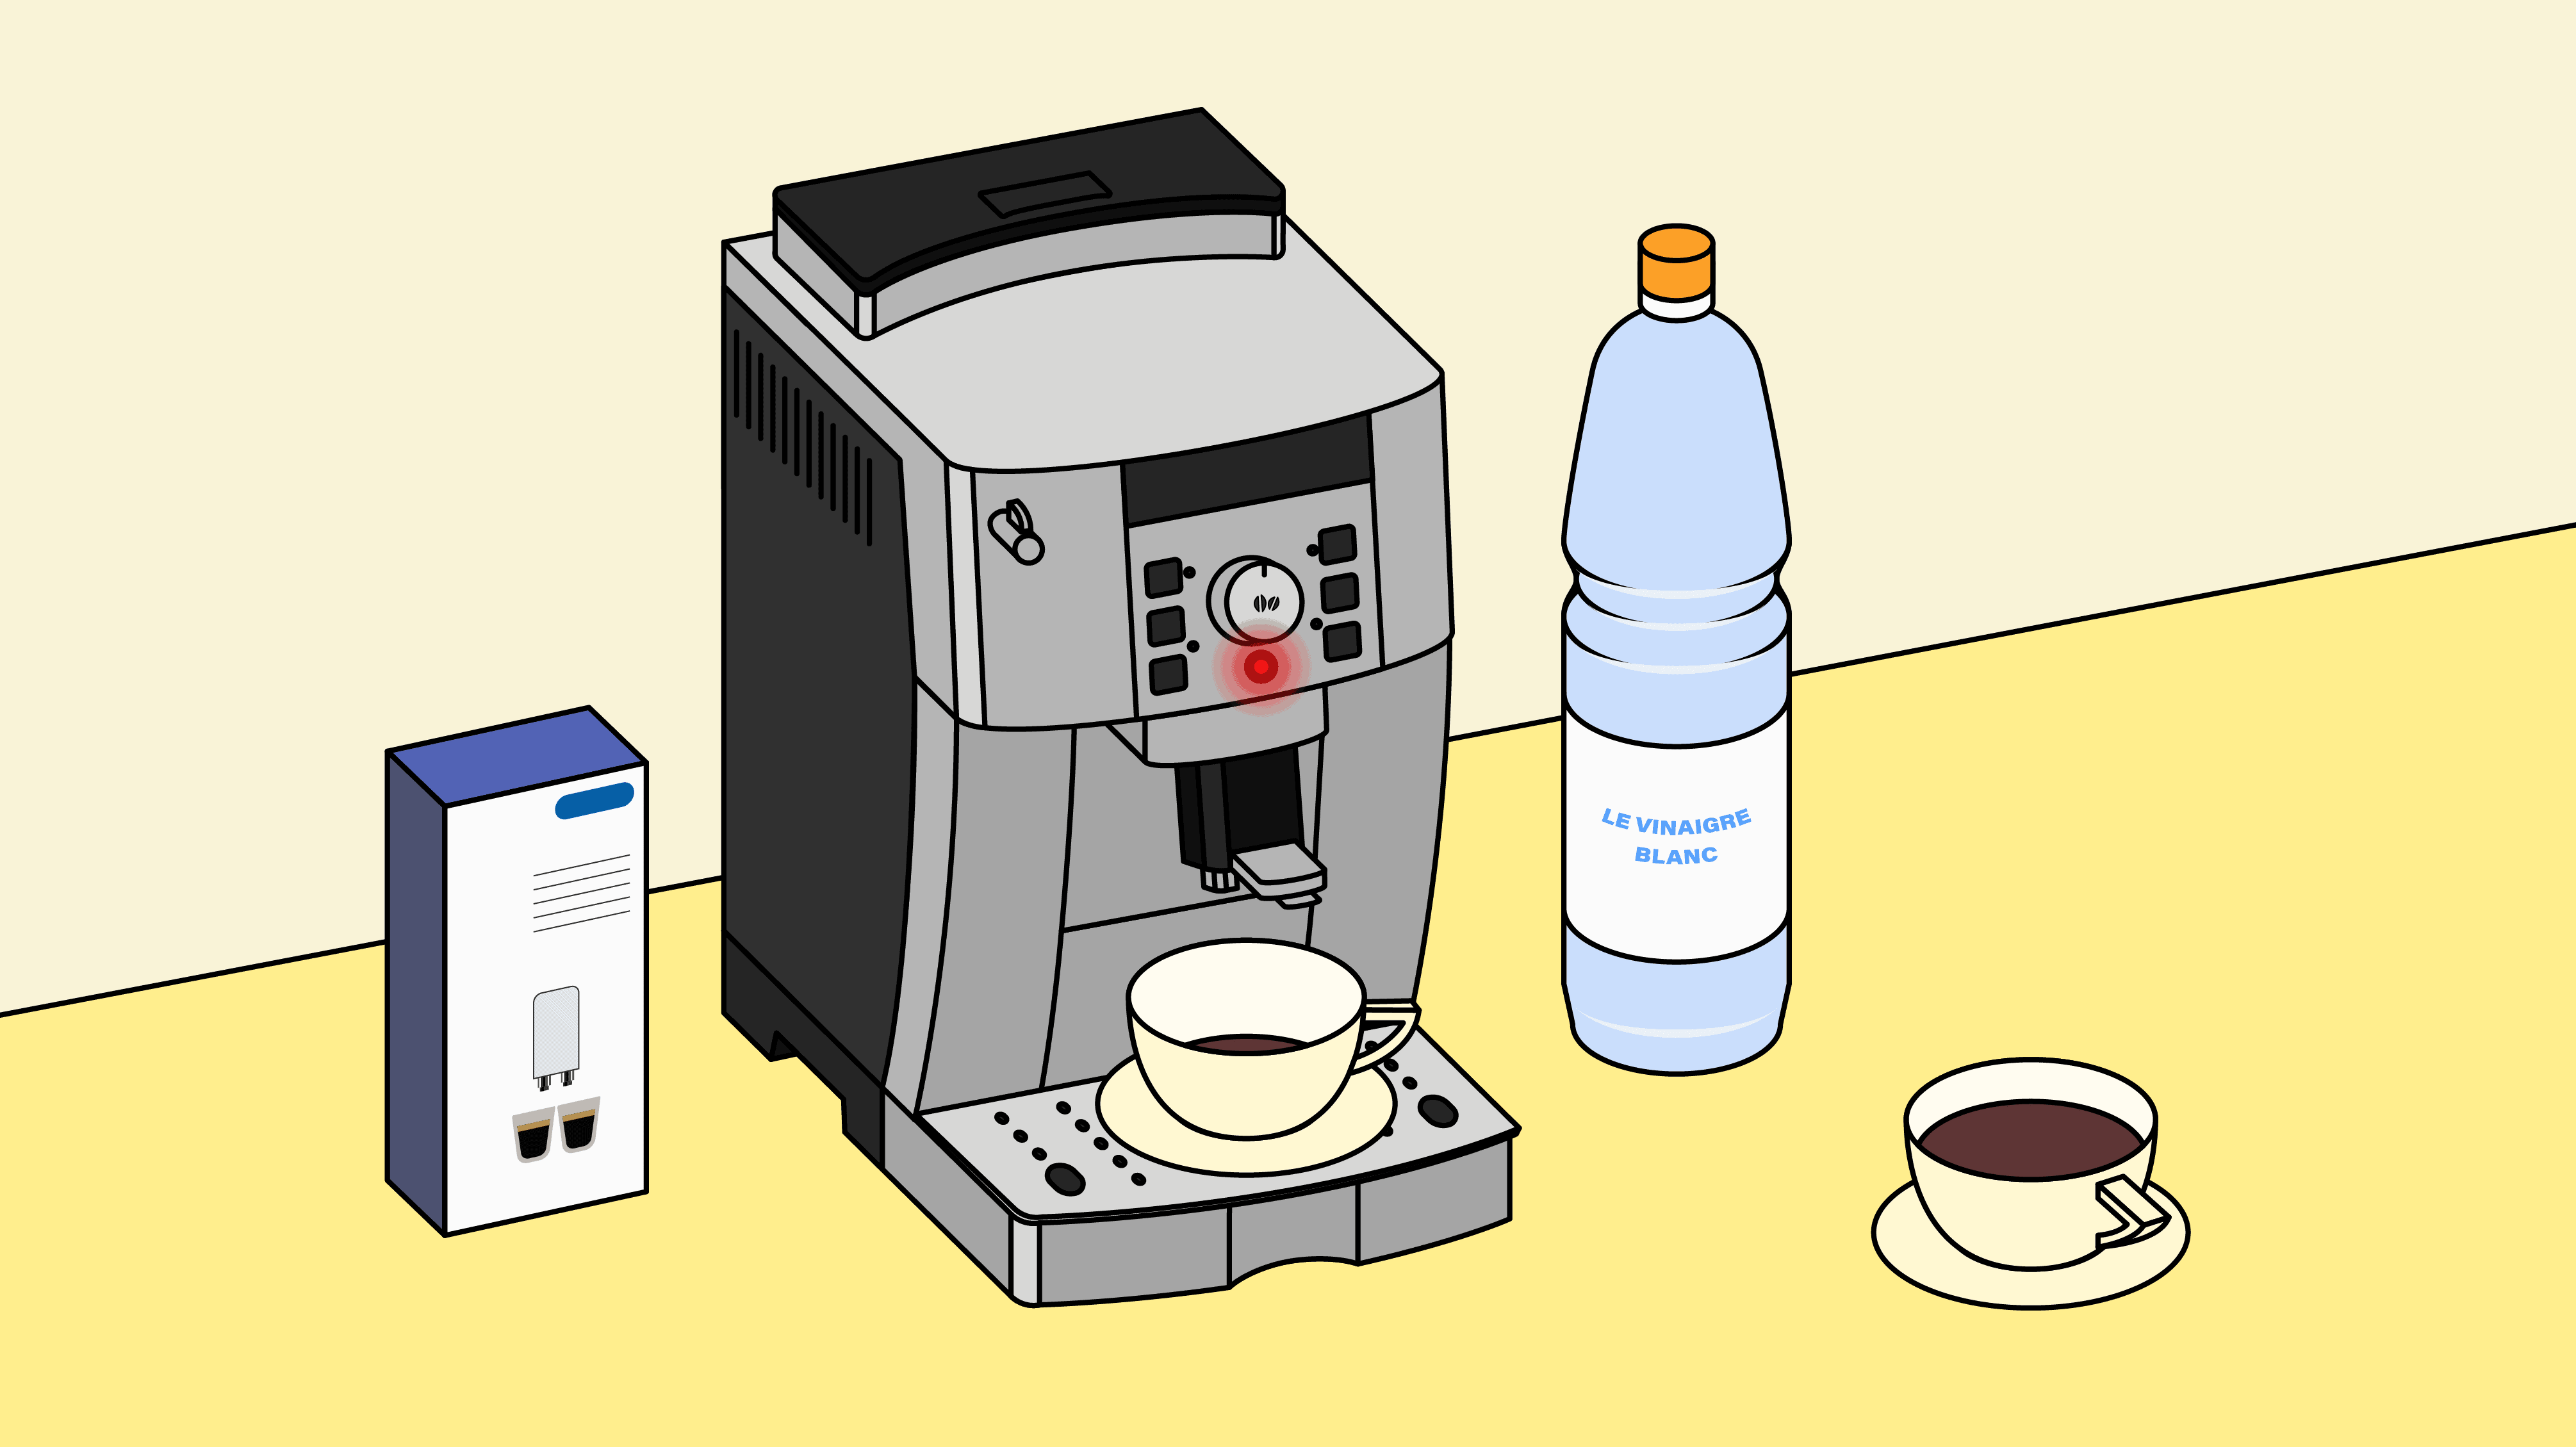 Détartrage Nespresso® : les étapes pour entretenir sa machine à café